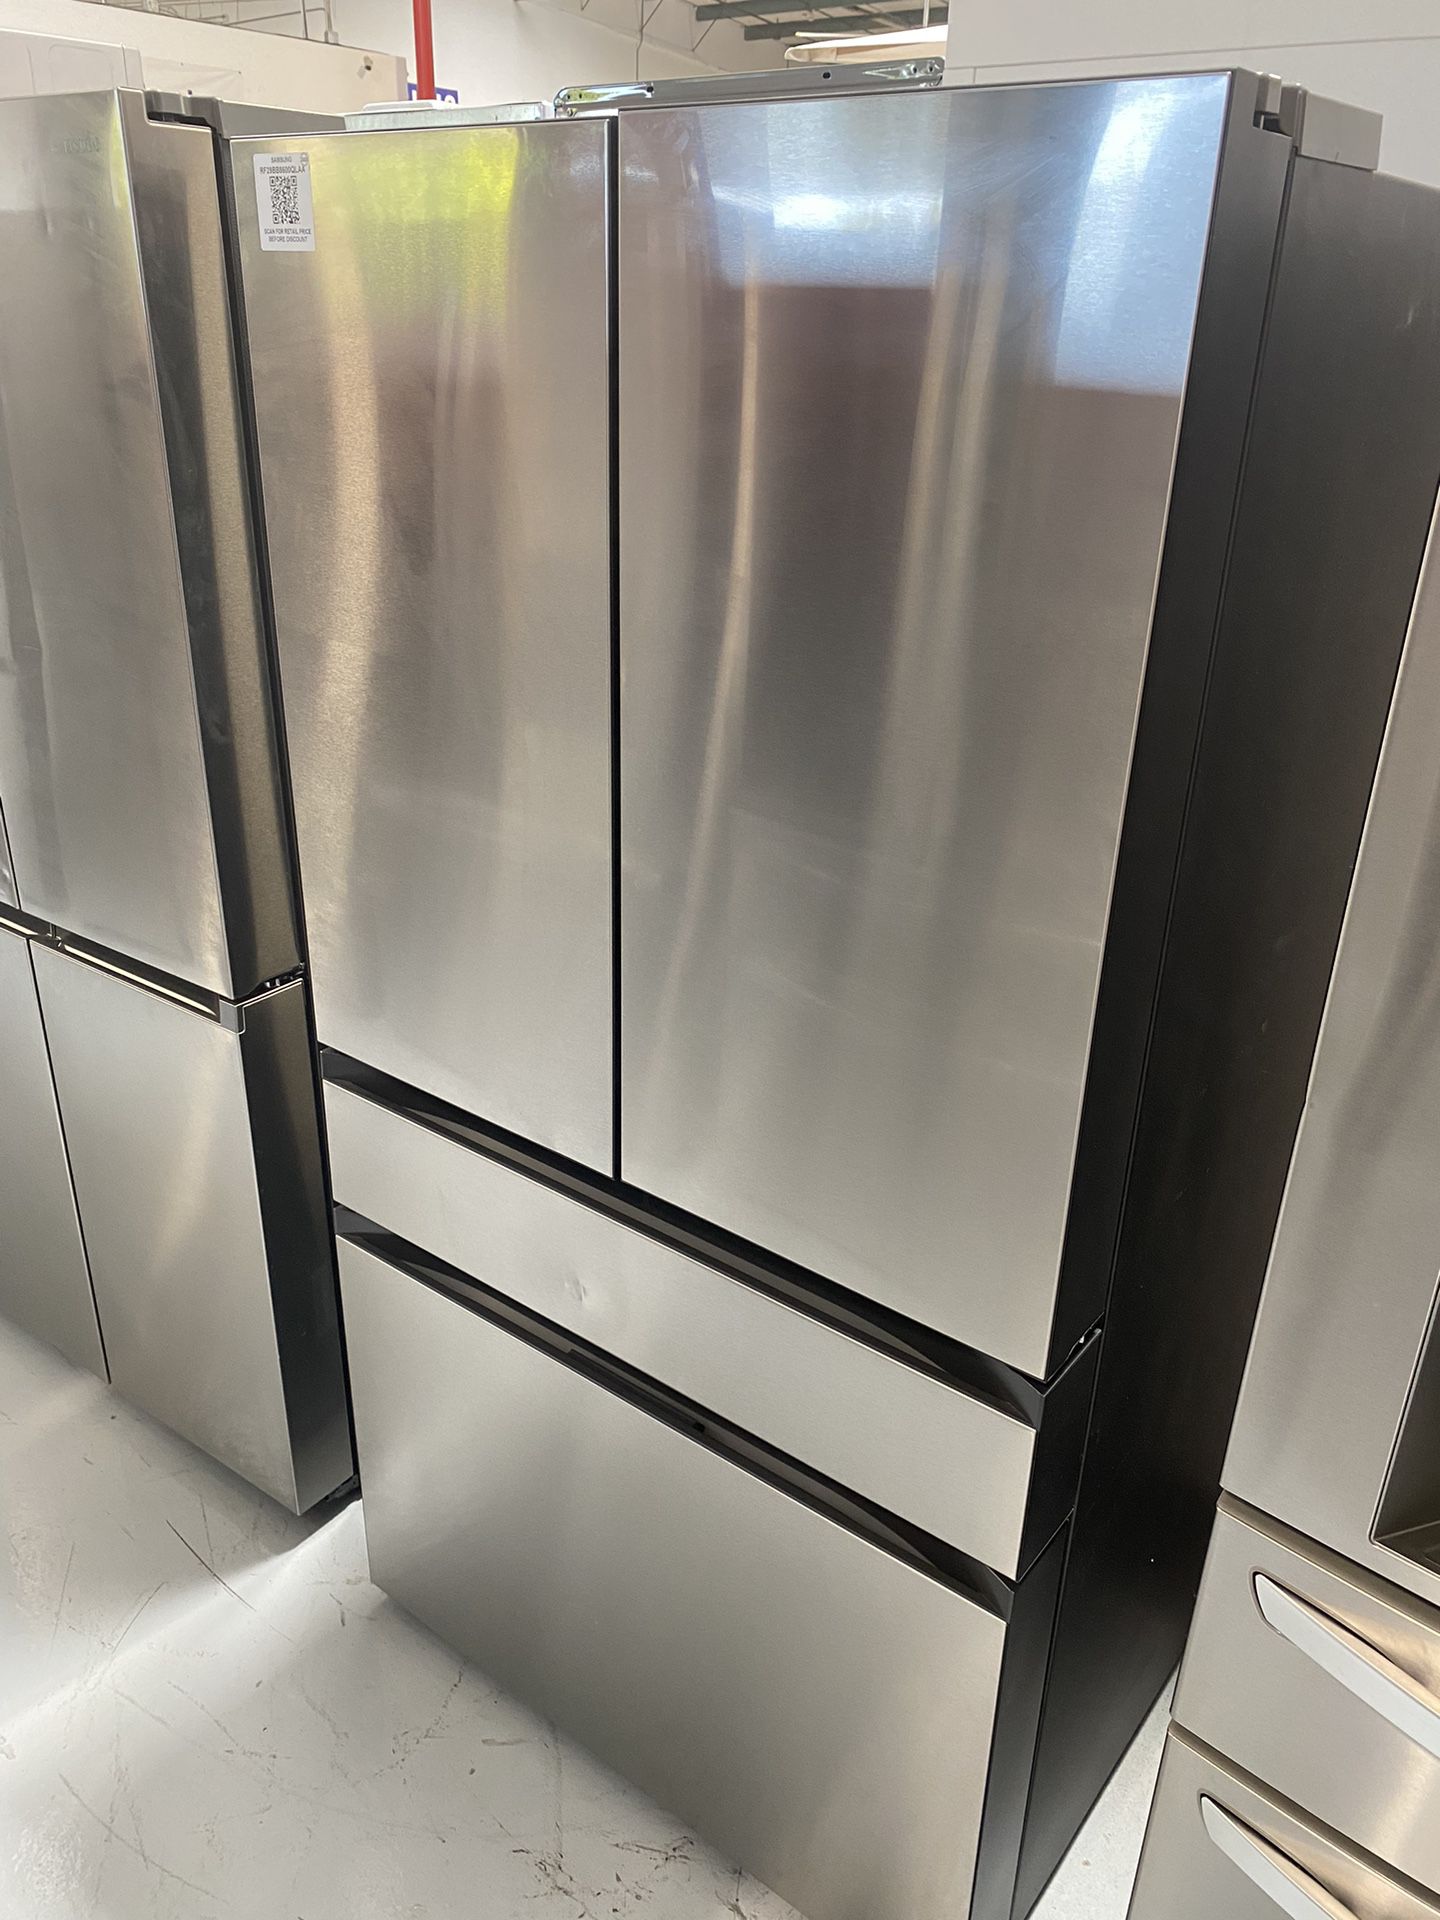 Stainless Steel 4-Door French Door Refrigerator - 29 Cu. Ft.